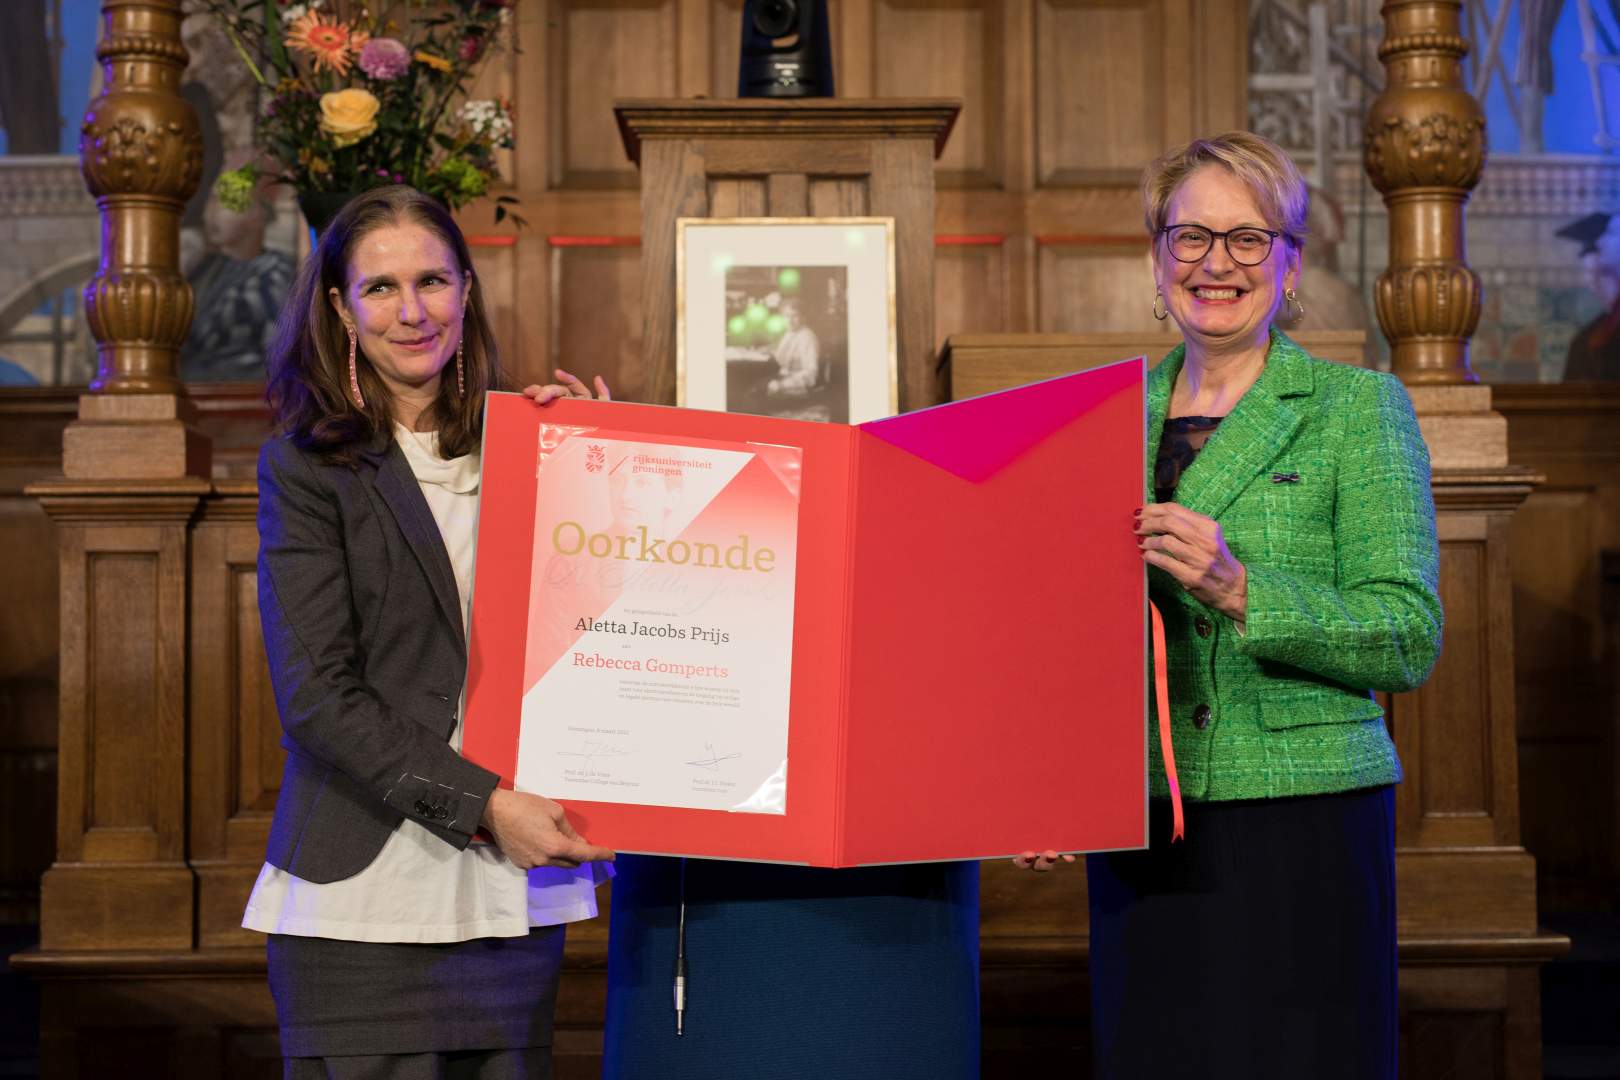 Rebecca Gomperts receives the certificate